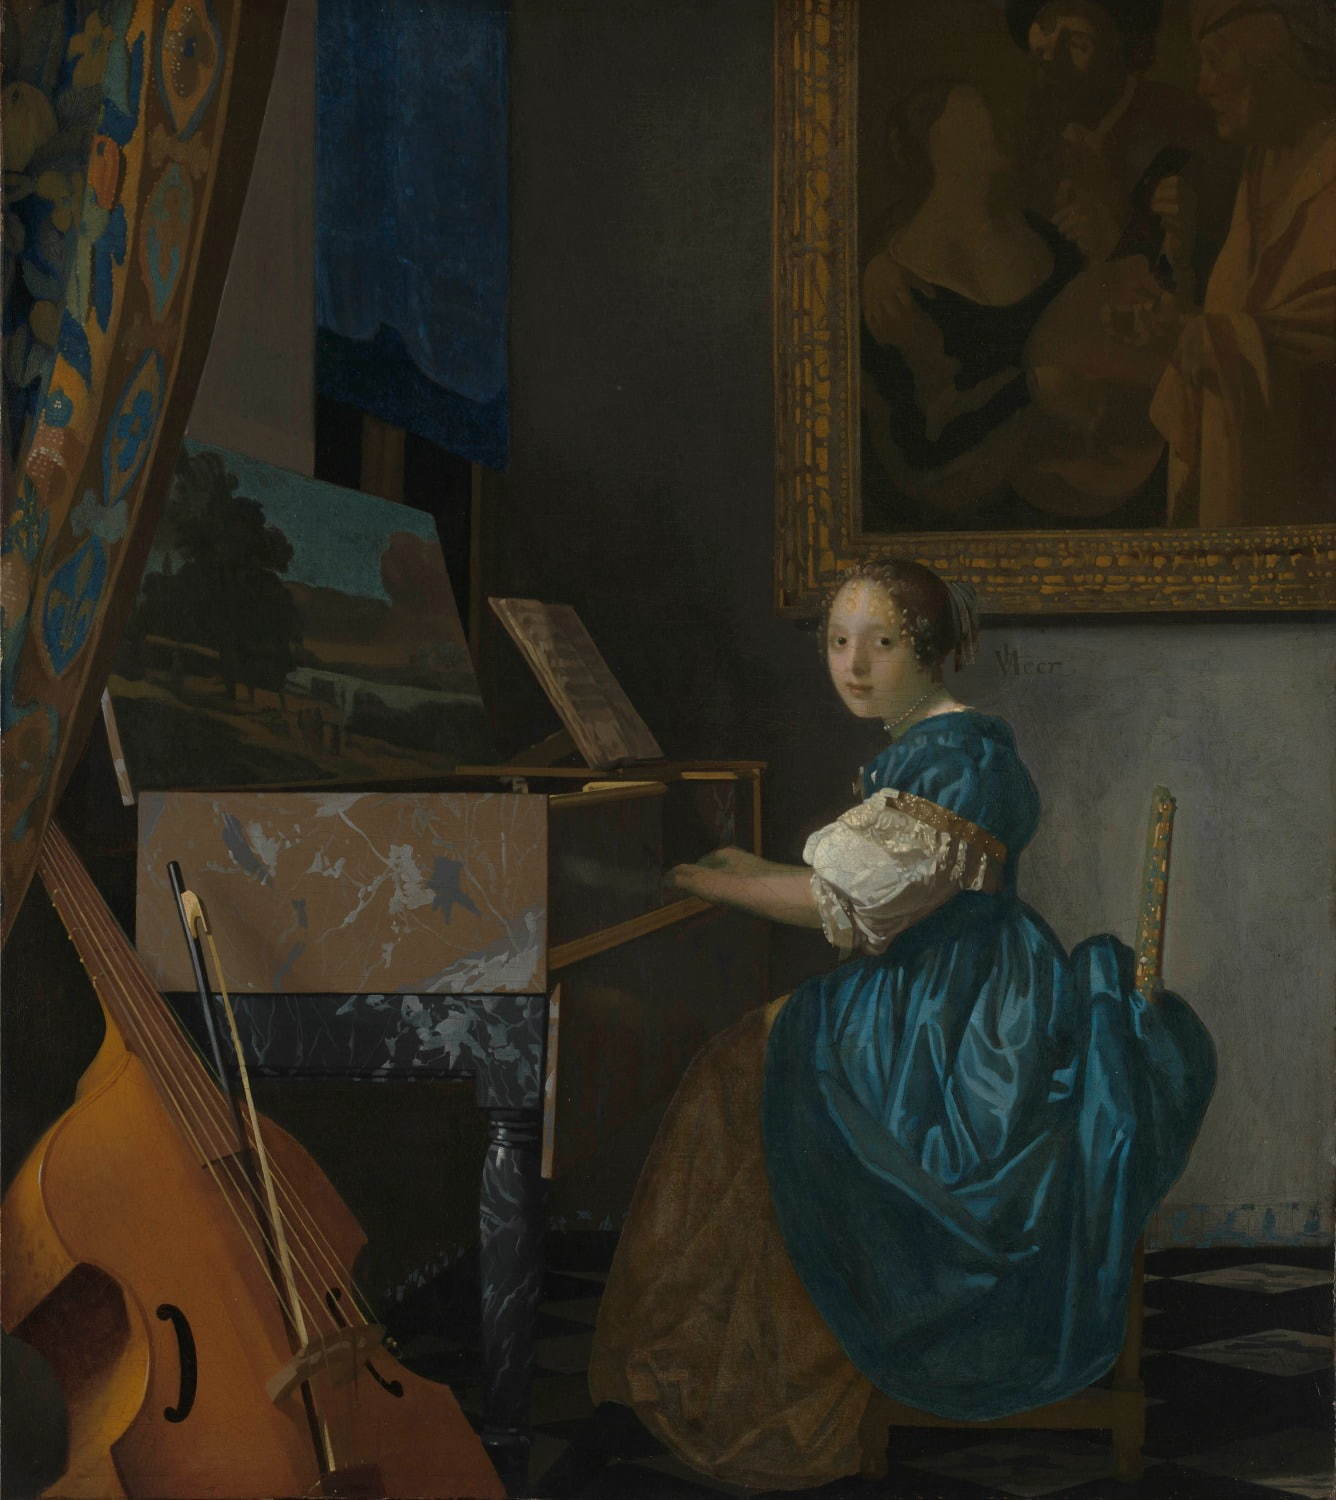 ヨハネス・フェルメール 《ヴァージナルの前に座る若い女性》 1670-72年頃　油彩・カンヴァス　51.5×45.5cm